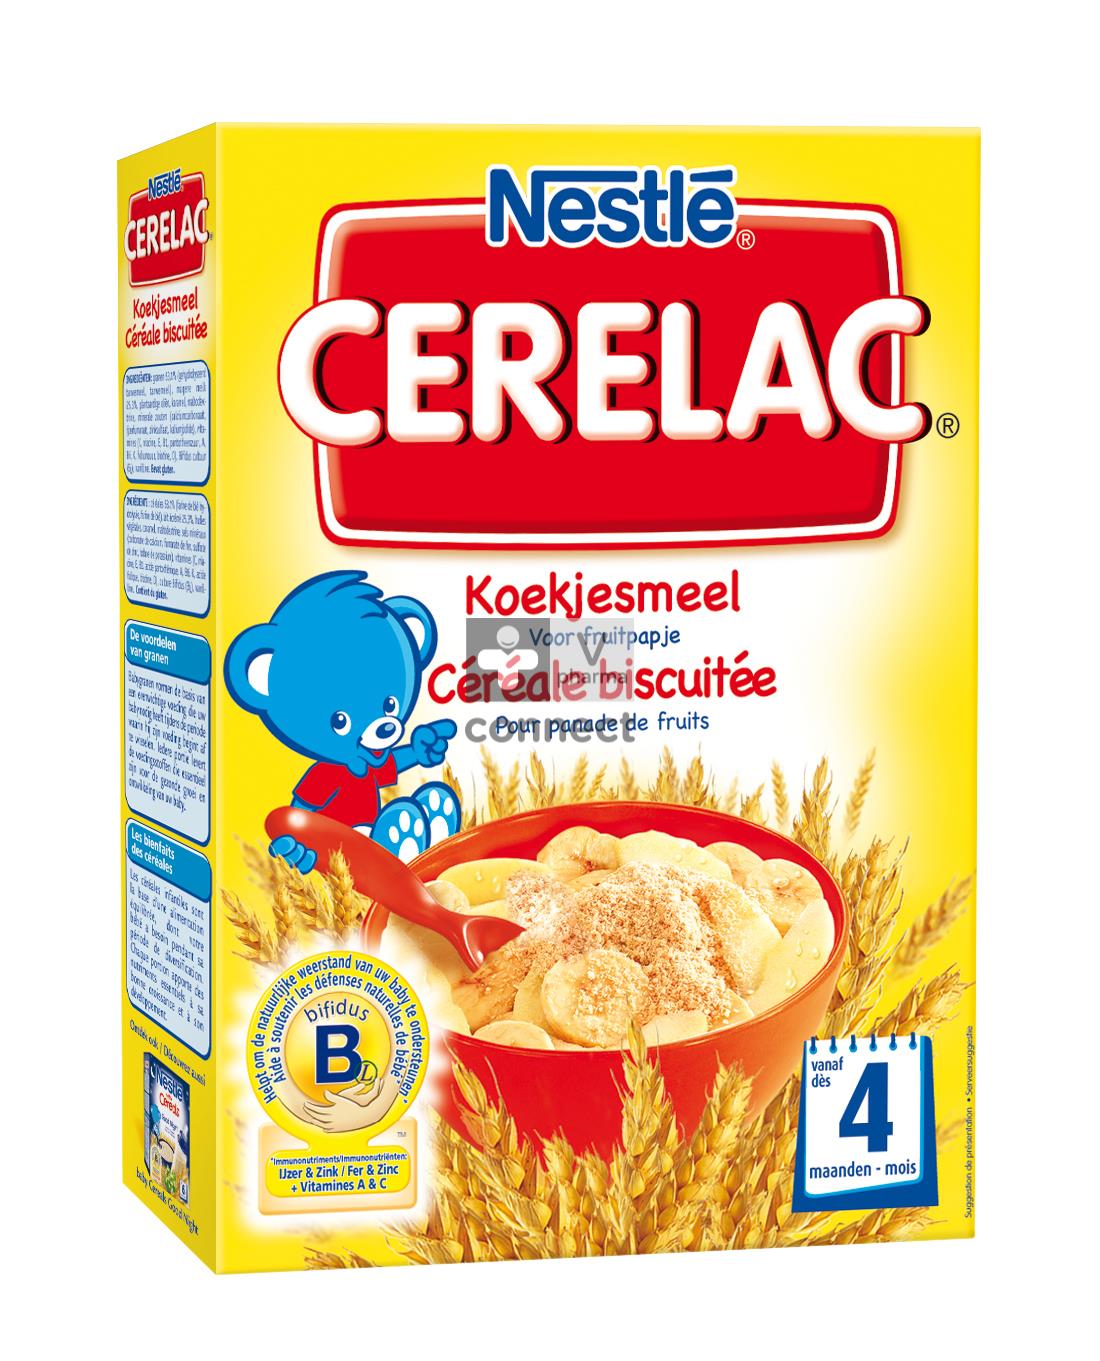 Acheter Nestlé Cerelac céréale biscuitée Poudre 250g ? Maintenant pour €  3.78 chez Viata